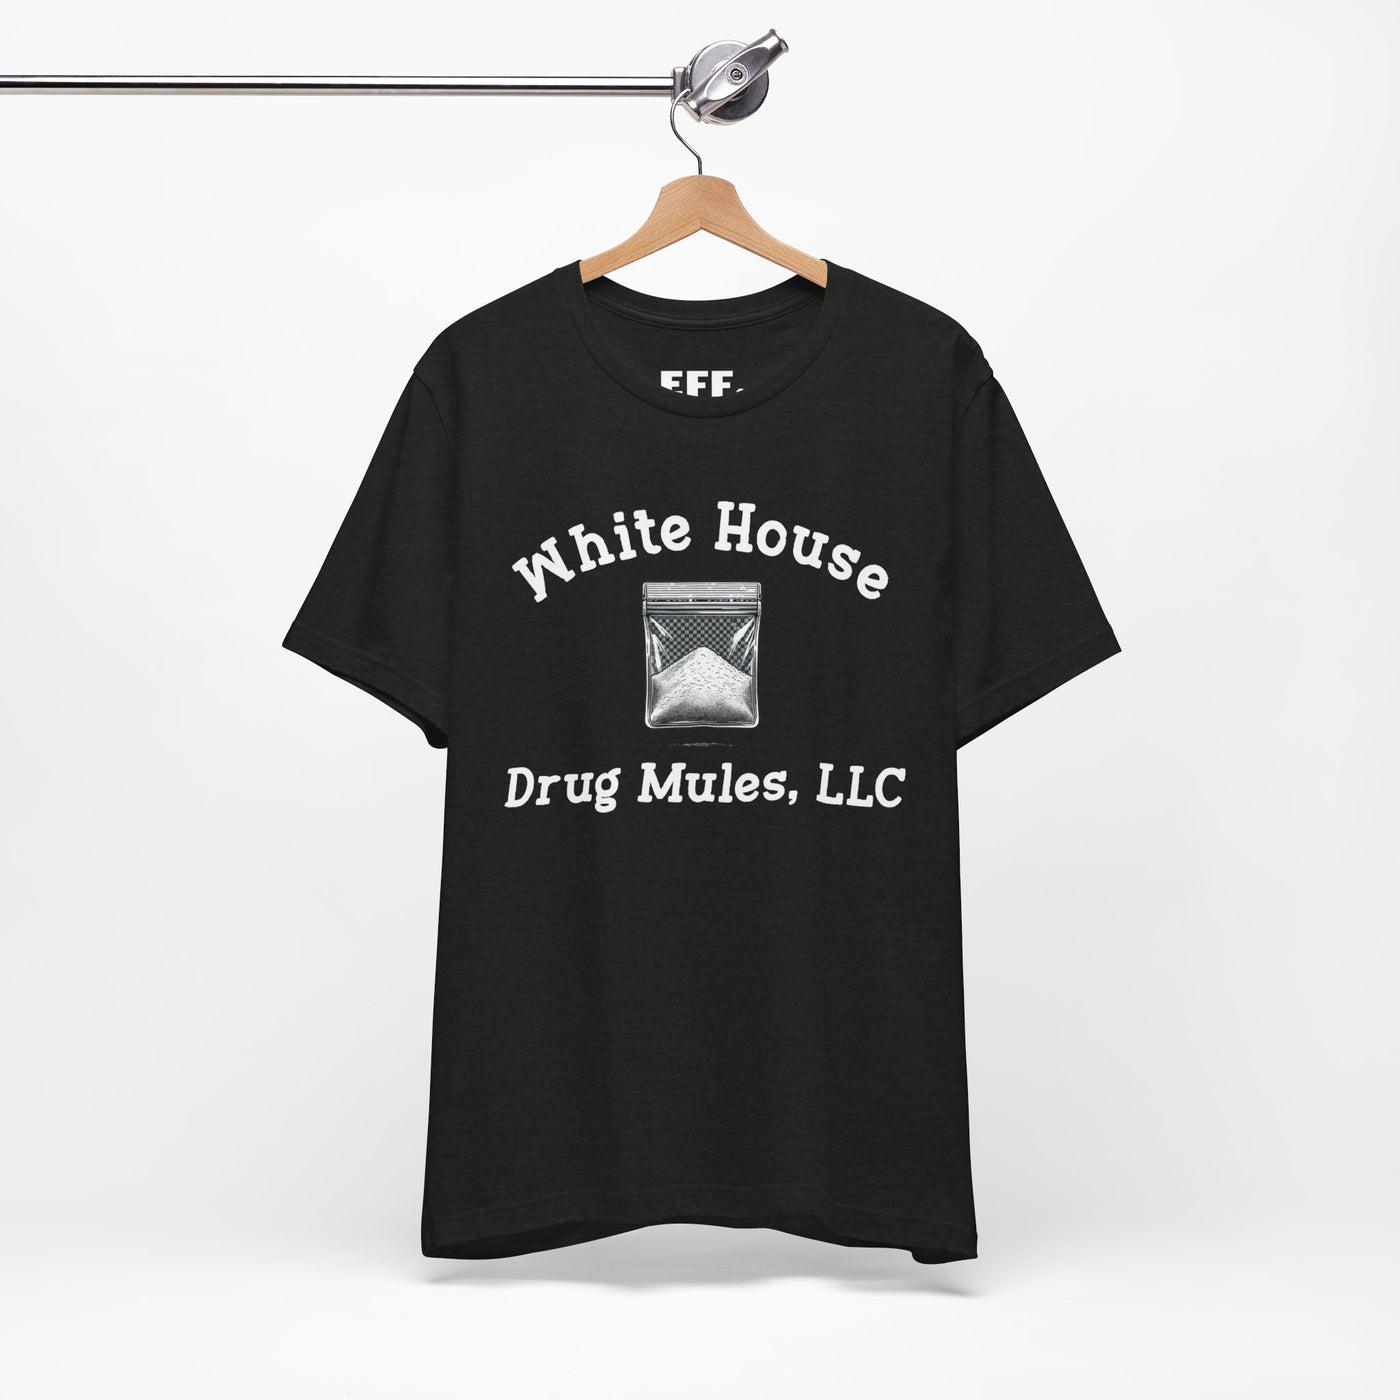 White House Drug Mules, LLC